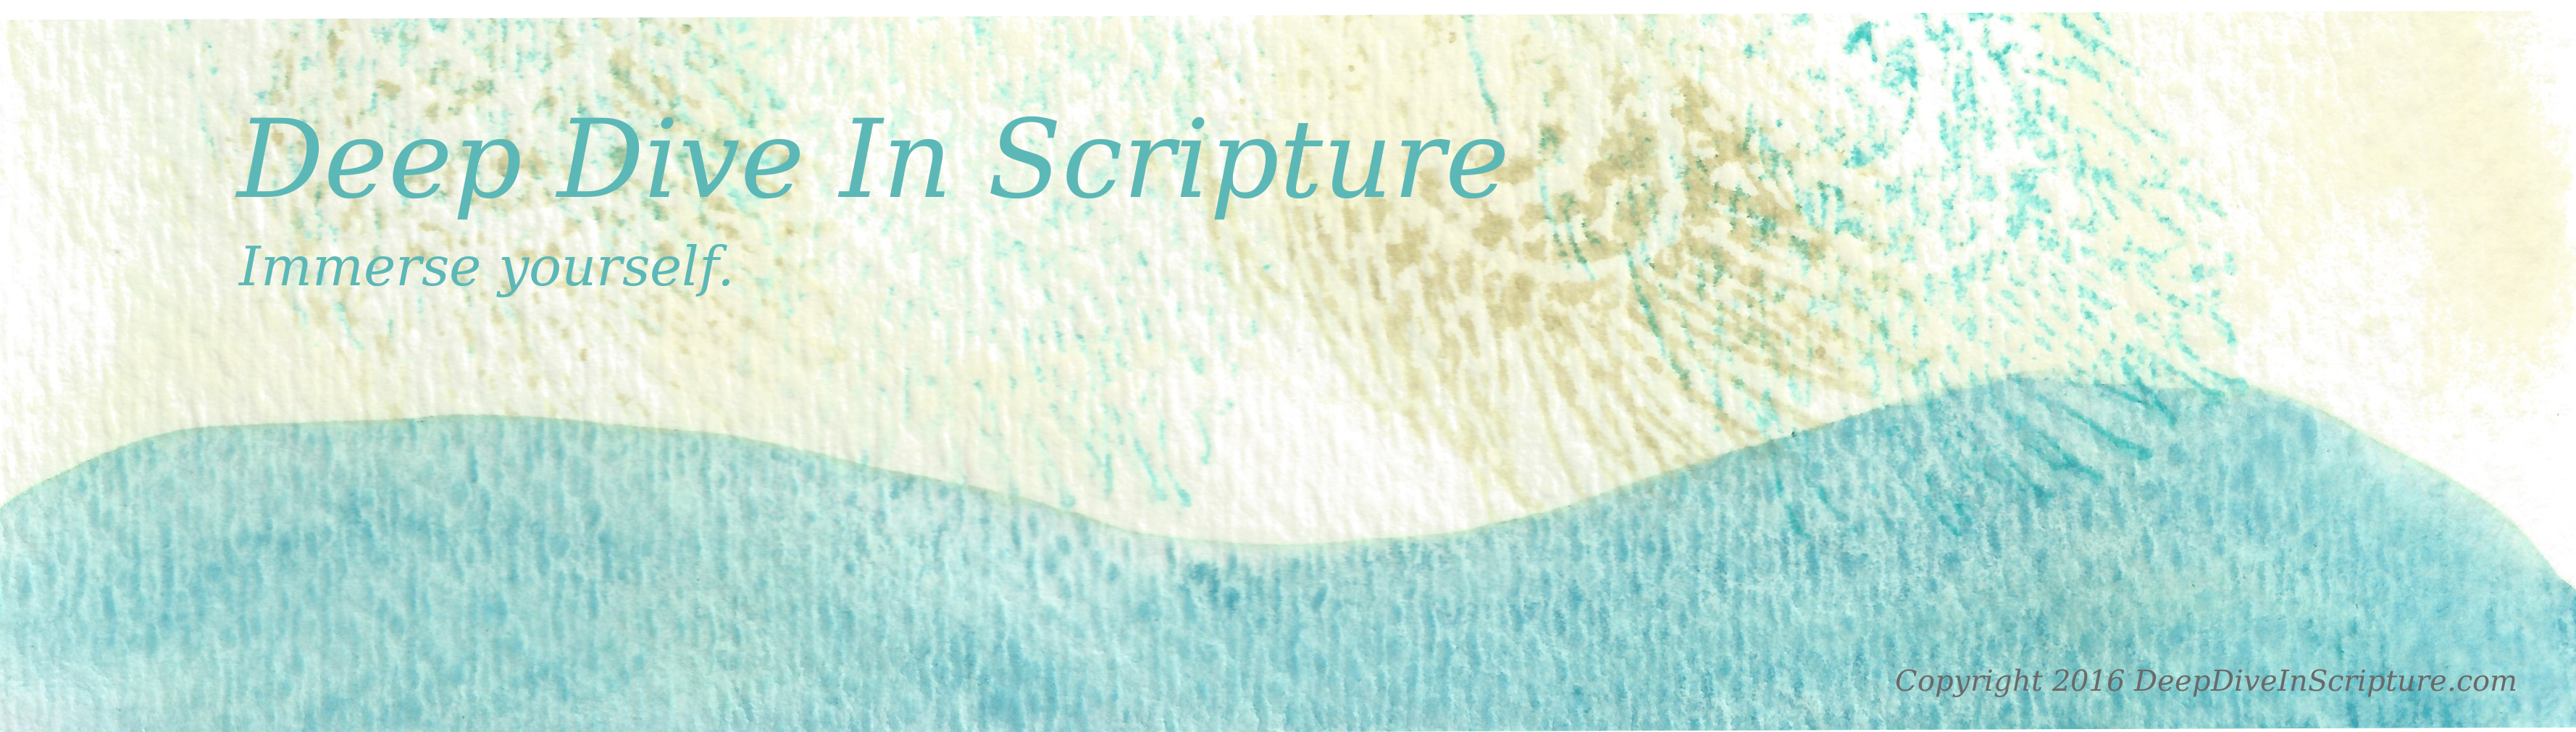 Deep Dive in Scripture